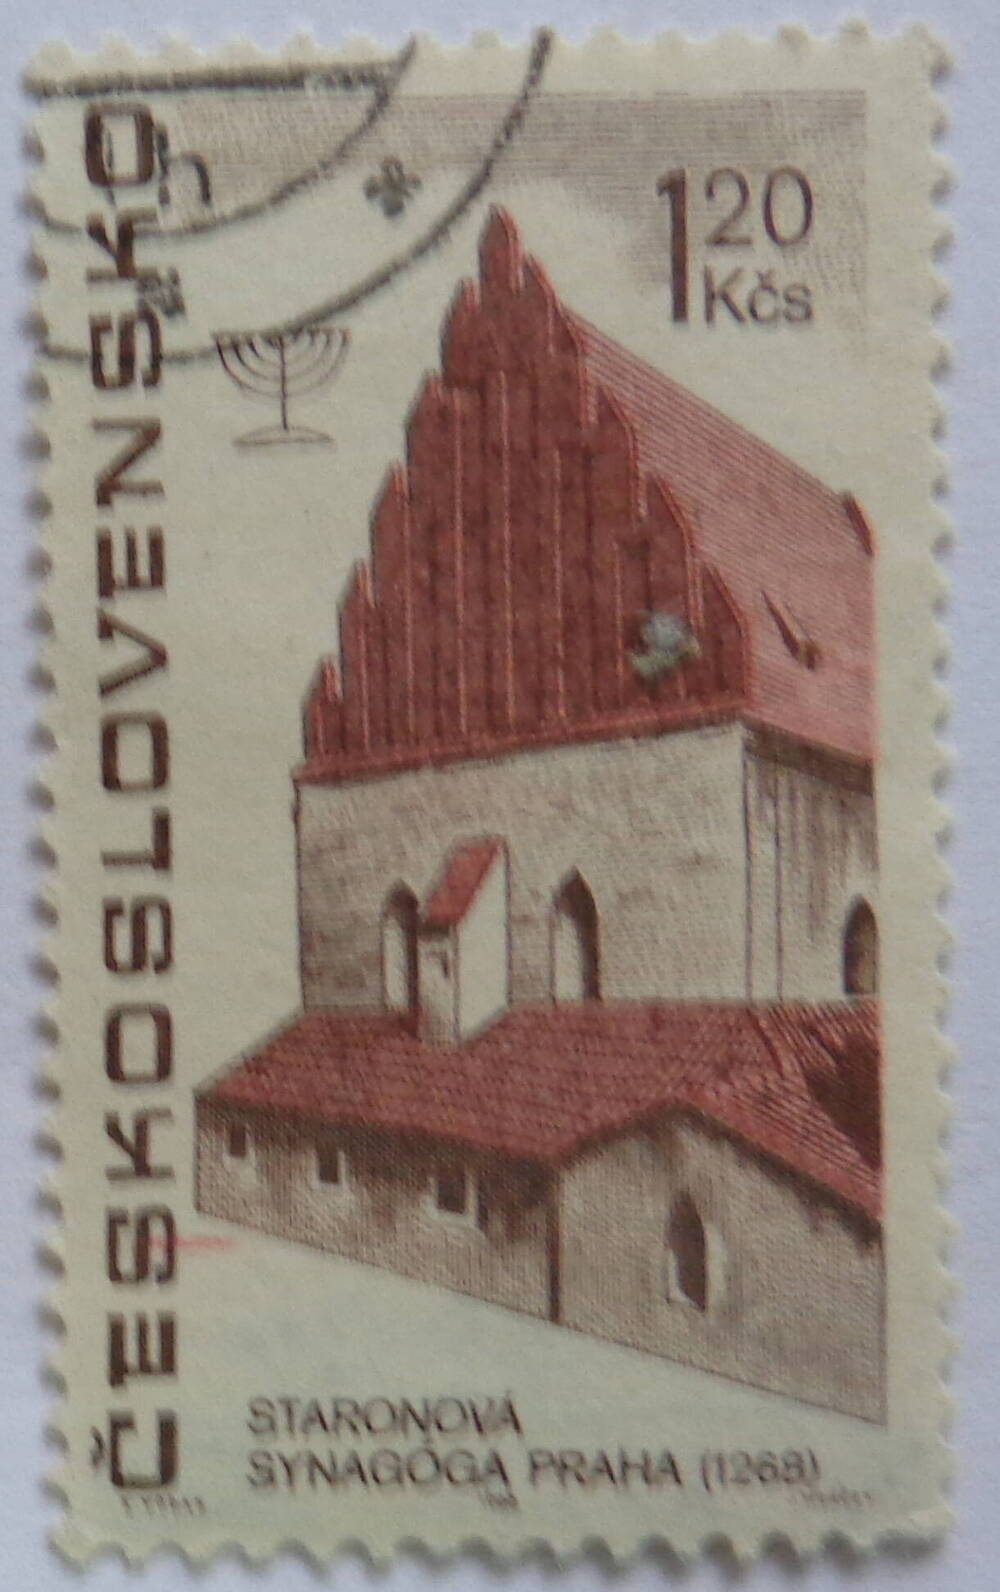 Марка почтовая. Номинальная стоимость: 1,60 Kčs - Чехословацкая крона.